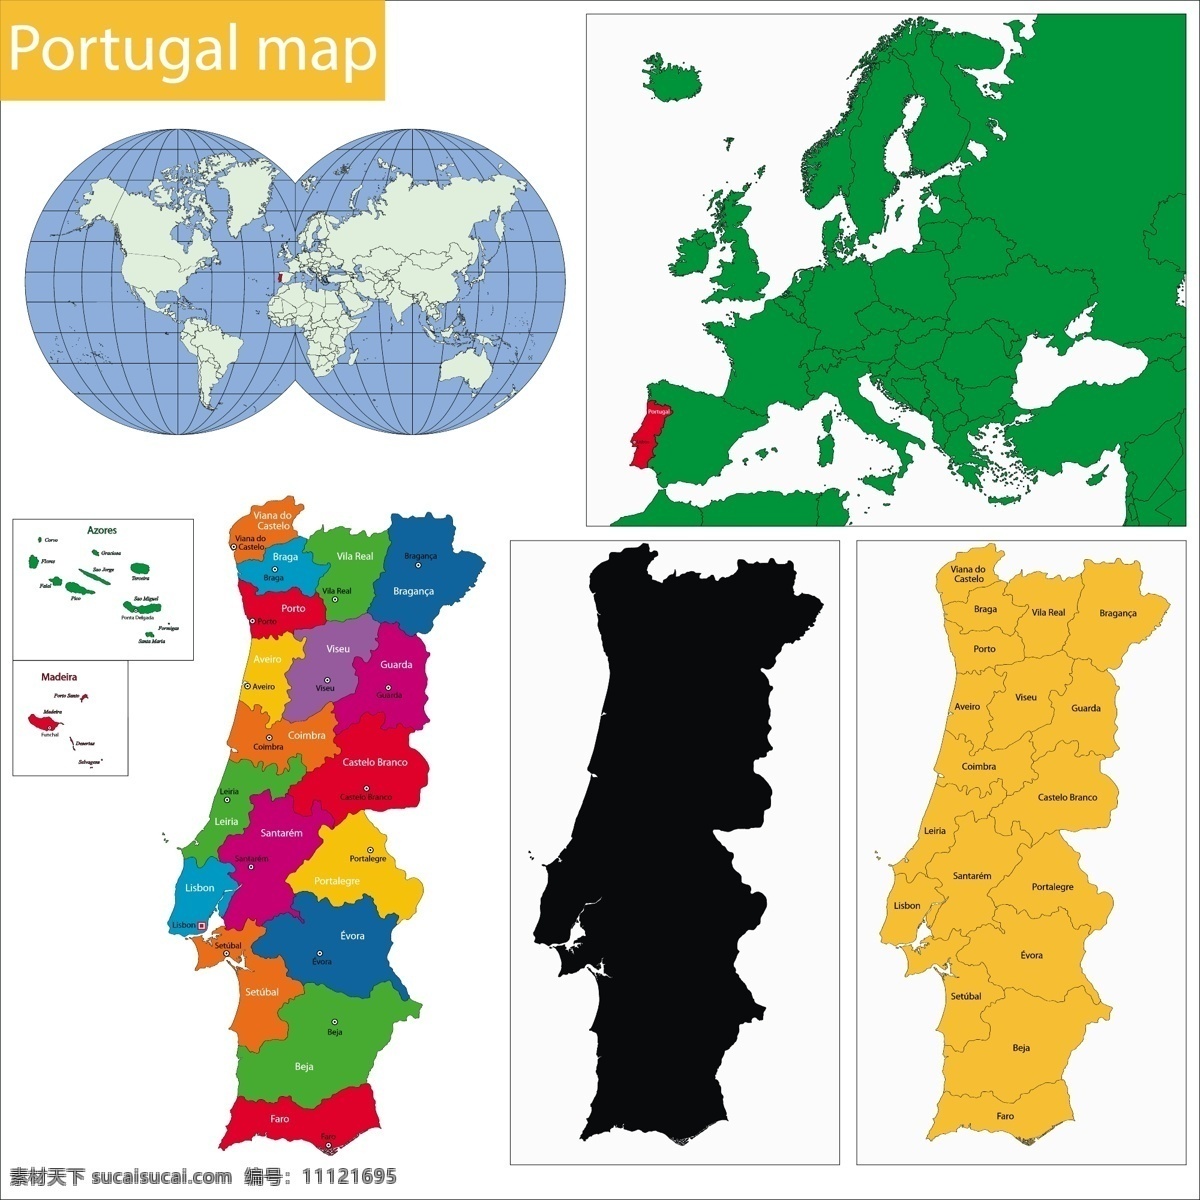 葡萄牙 国家 地图 矢量 模板下载 国旗 世界地图 彩色地图 世界版图 矢量地图 生活百科 矢量素材 白色